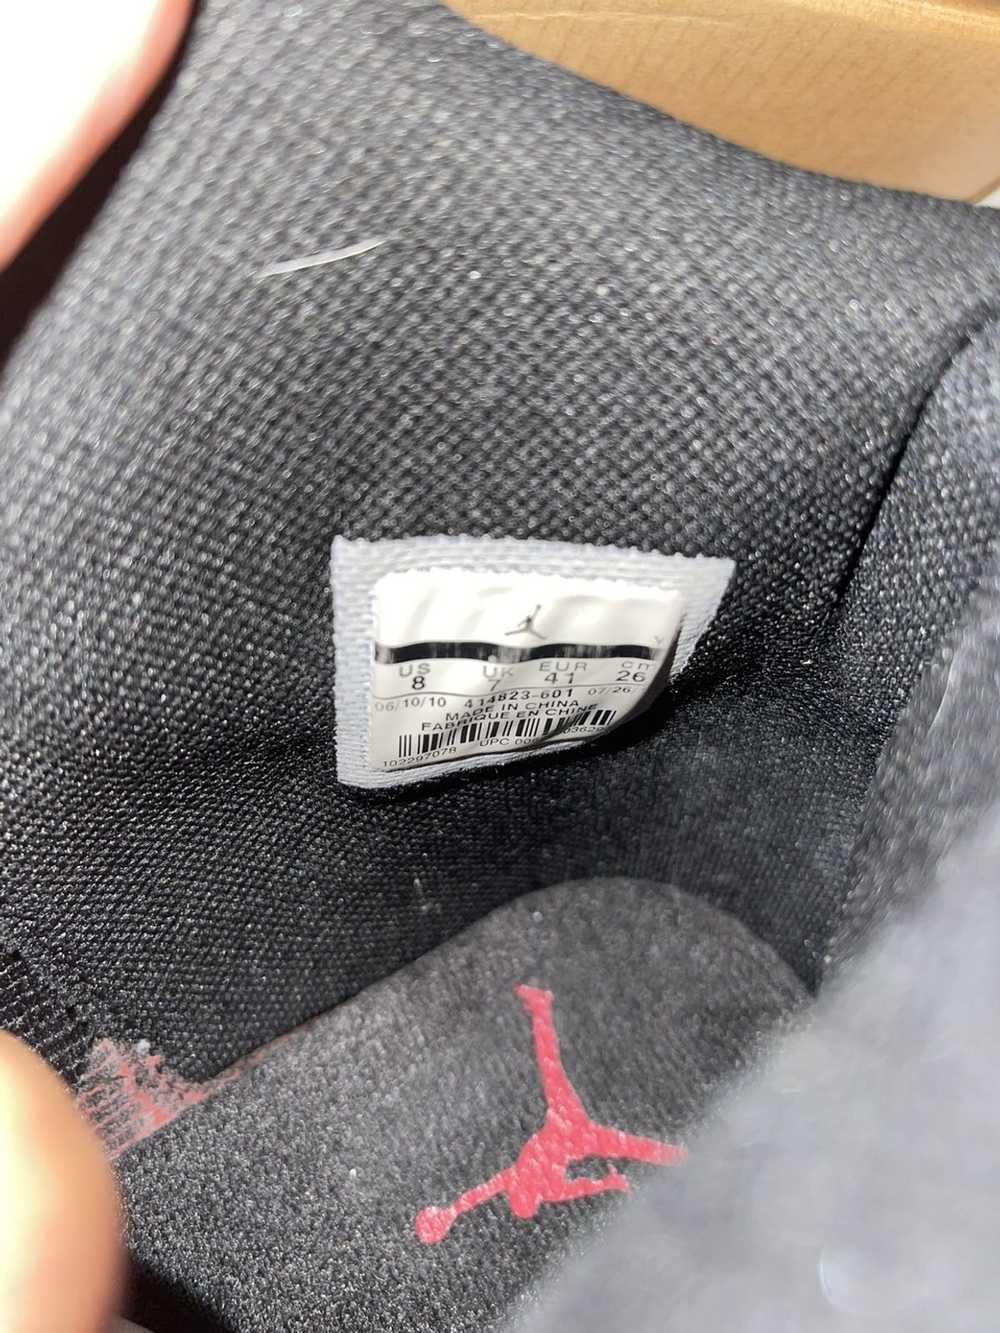 Jordan Brand × Nike Air Jordan 1 “Anodized Red” - image 11